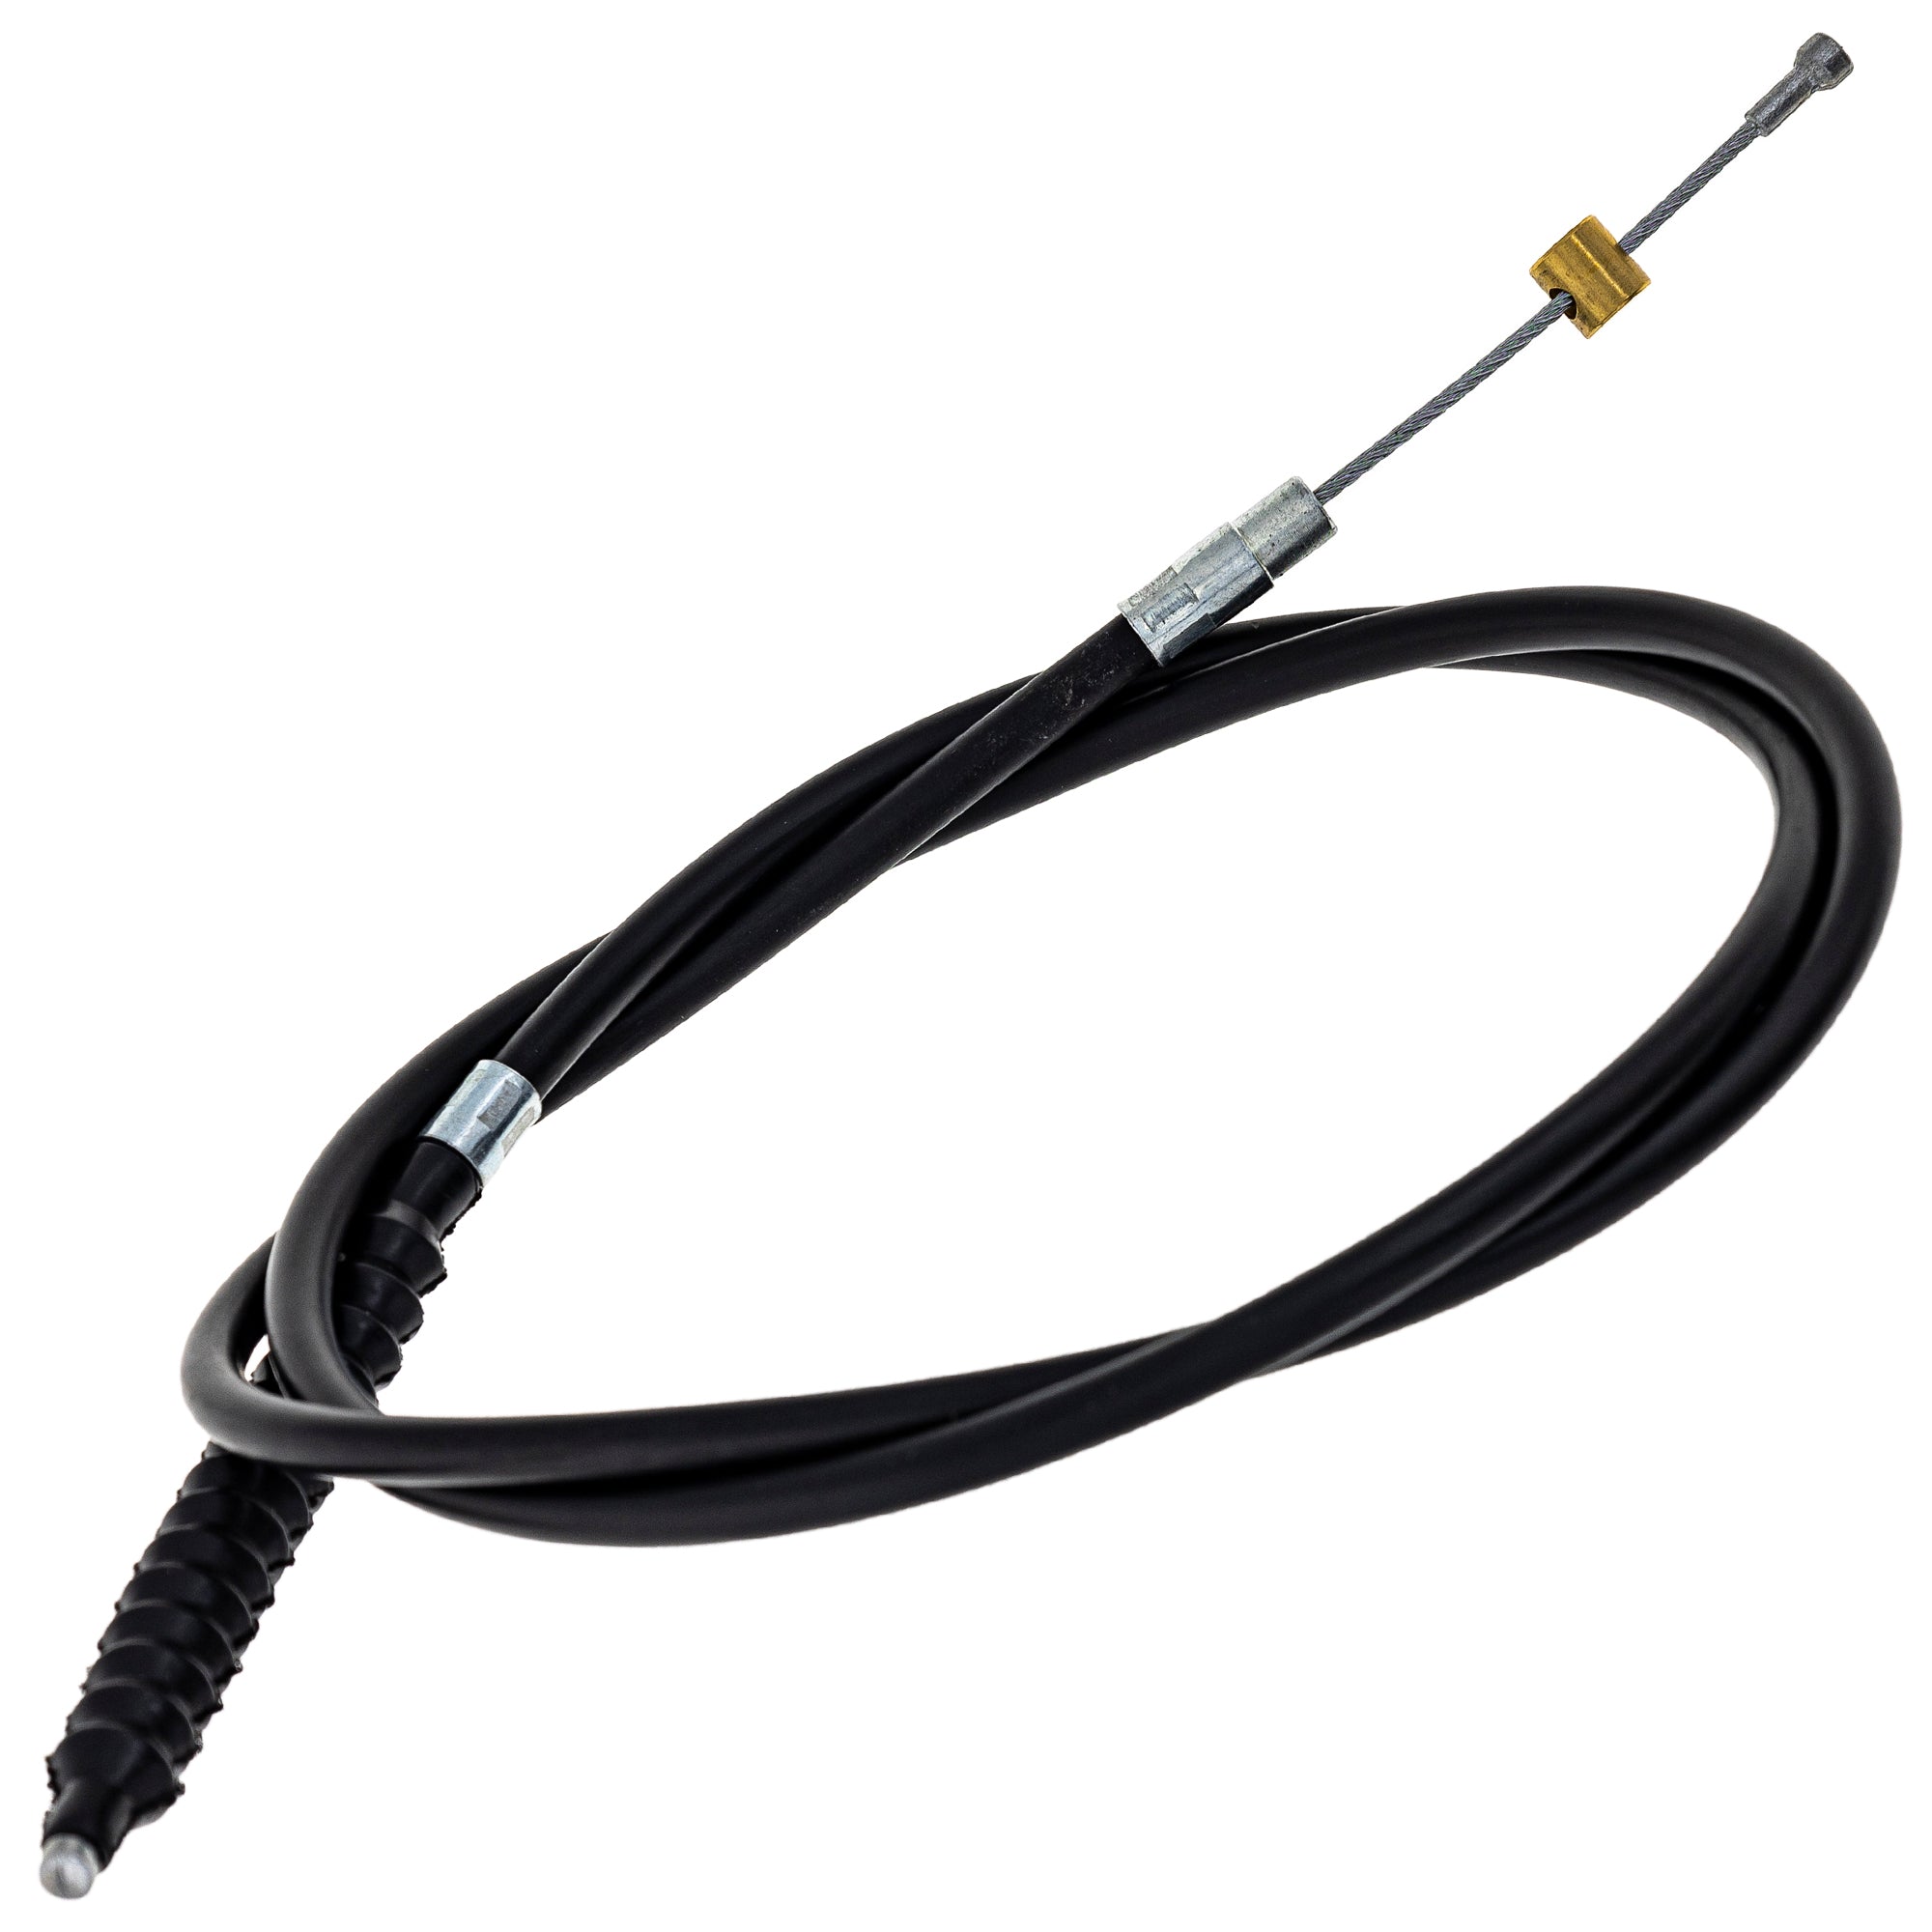 Clutch Cable for Husqvarna TC610 TE610 TE410 WXC610 WXE610 800092218